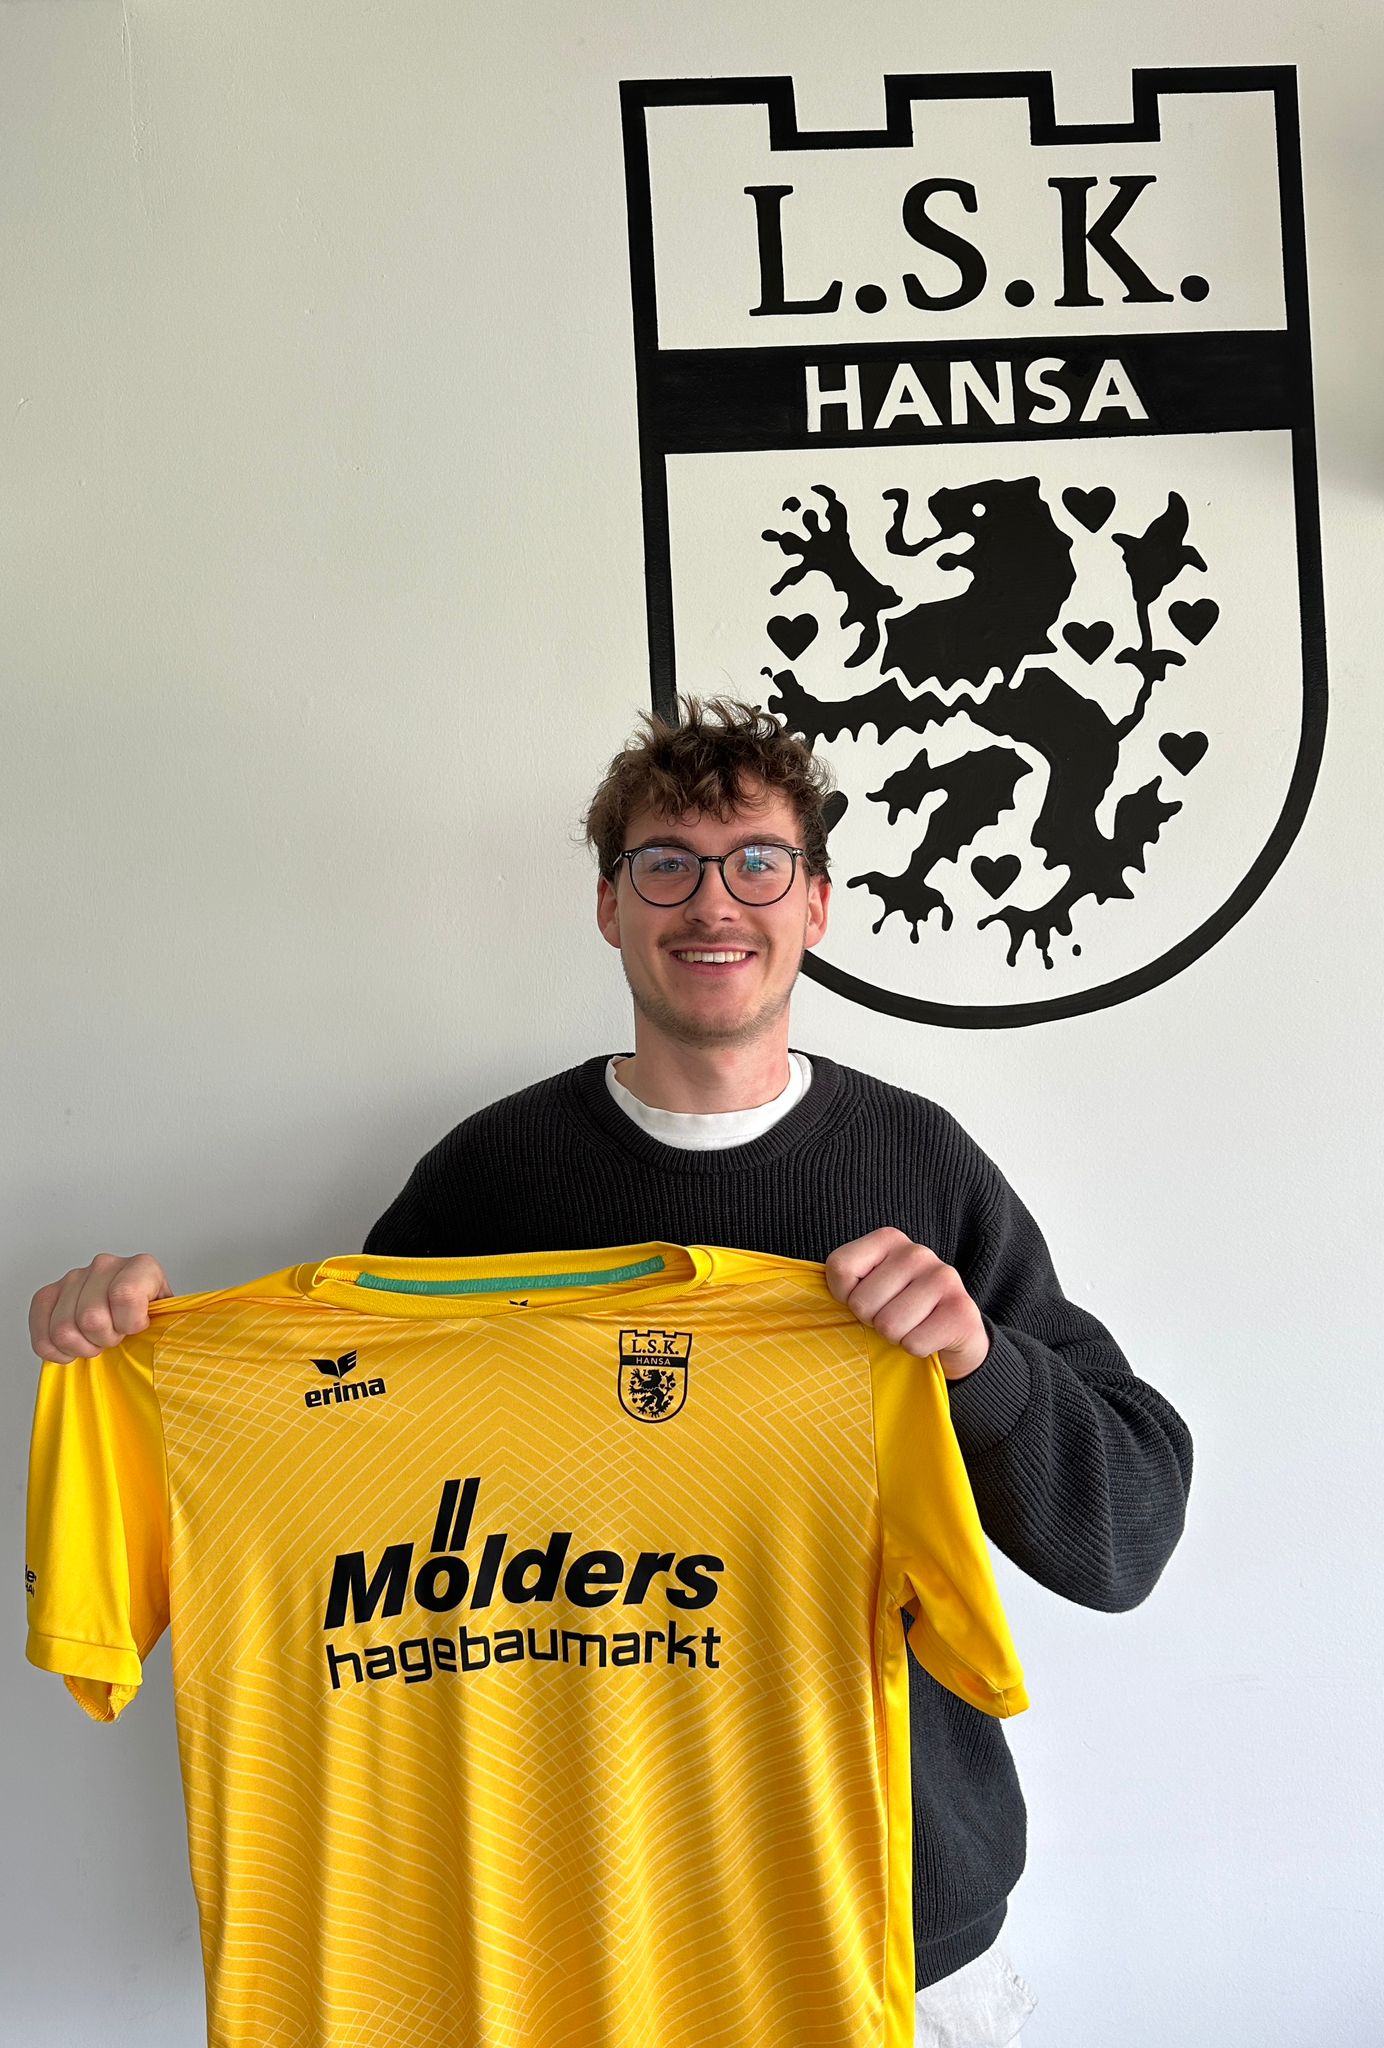 Read more about the article Steffen Tiegs – Stammtorhüter vom Ahrensburger TSV (Landesliga Hansa) – wechselt zu unserem LSK!